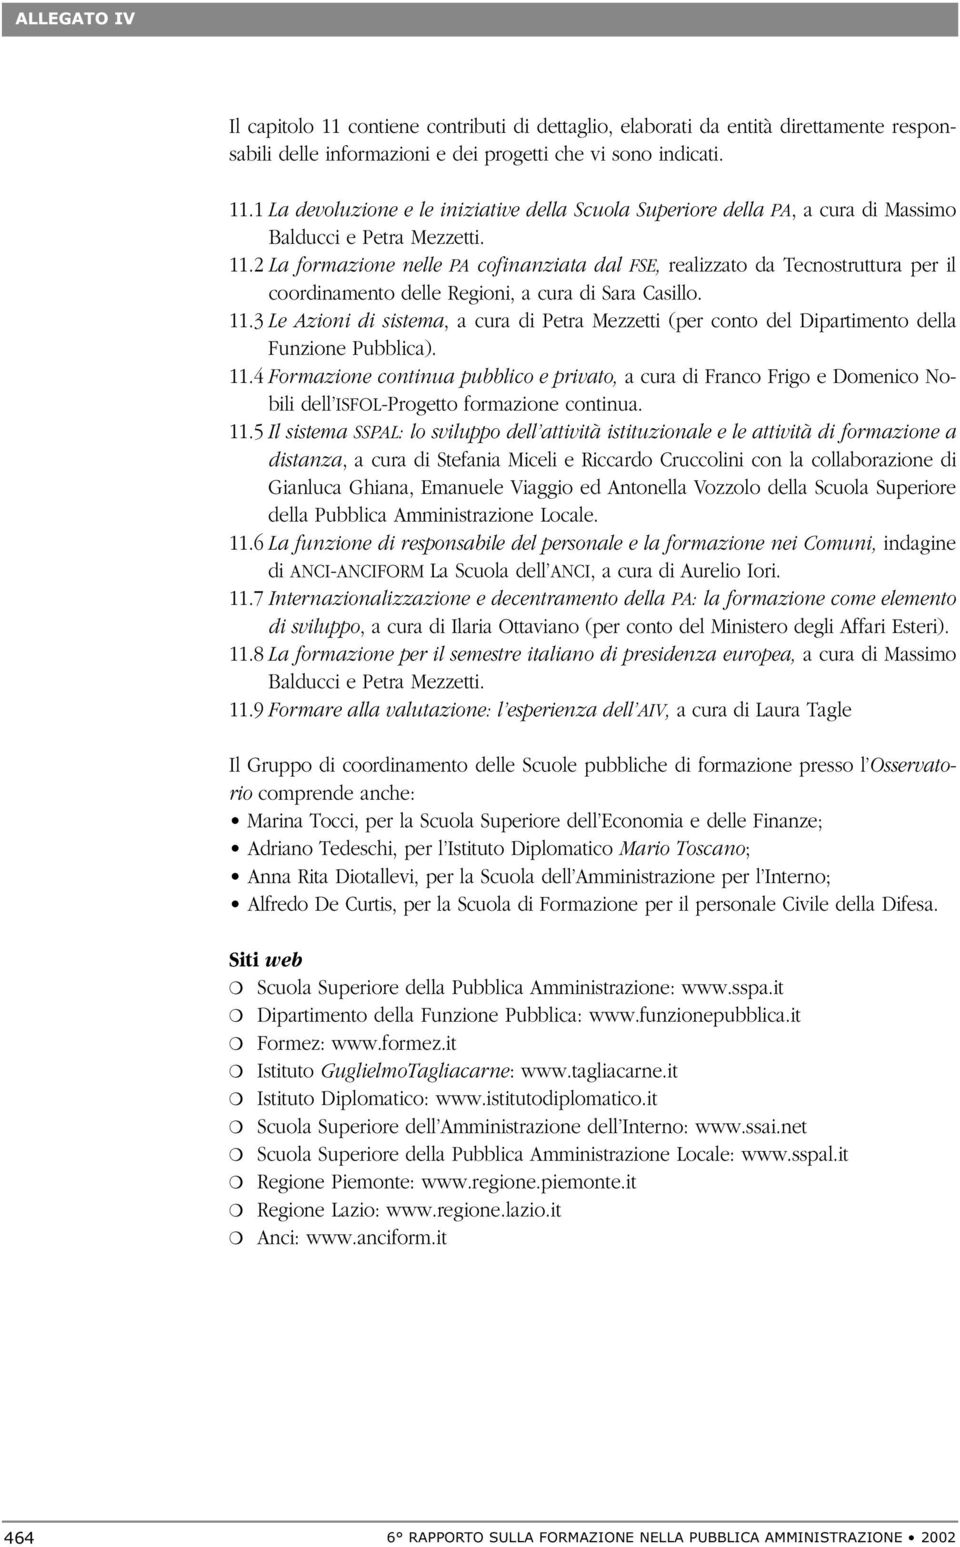 3 Le Azioni di sistema, a cura di Petra Mezzetti (per conto del Dipartimento della Funzione Pubblica). 11.